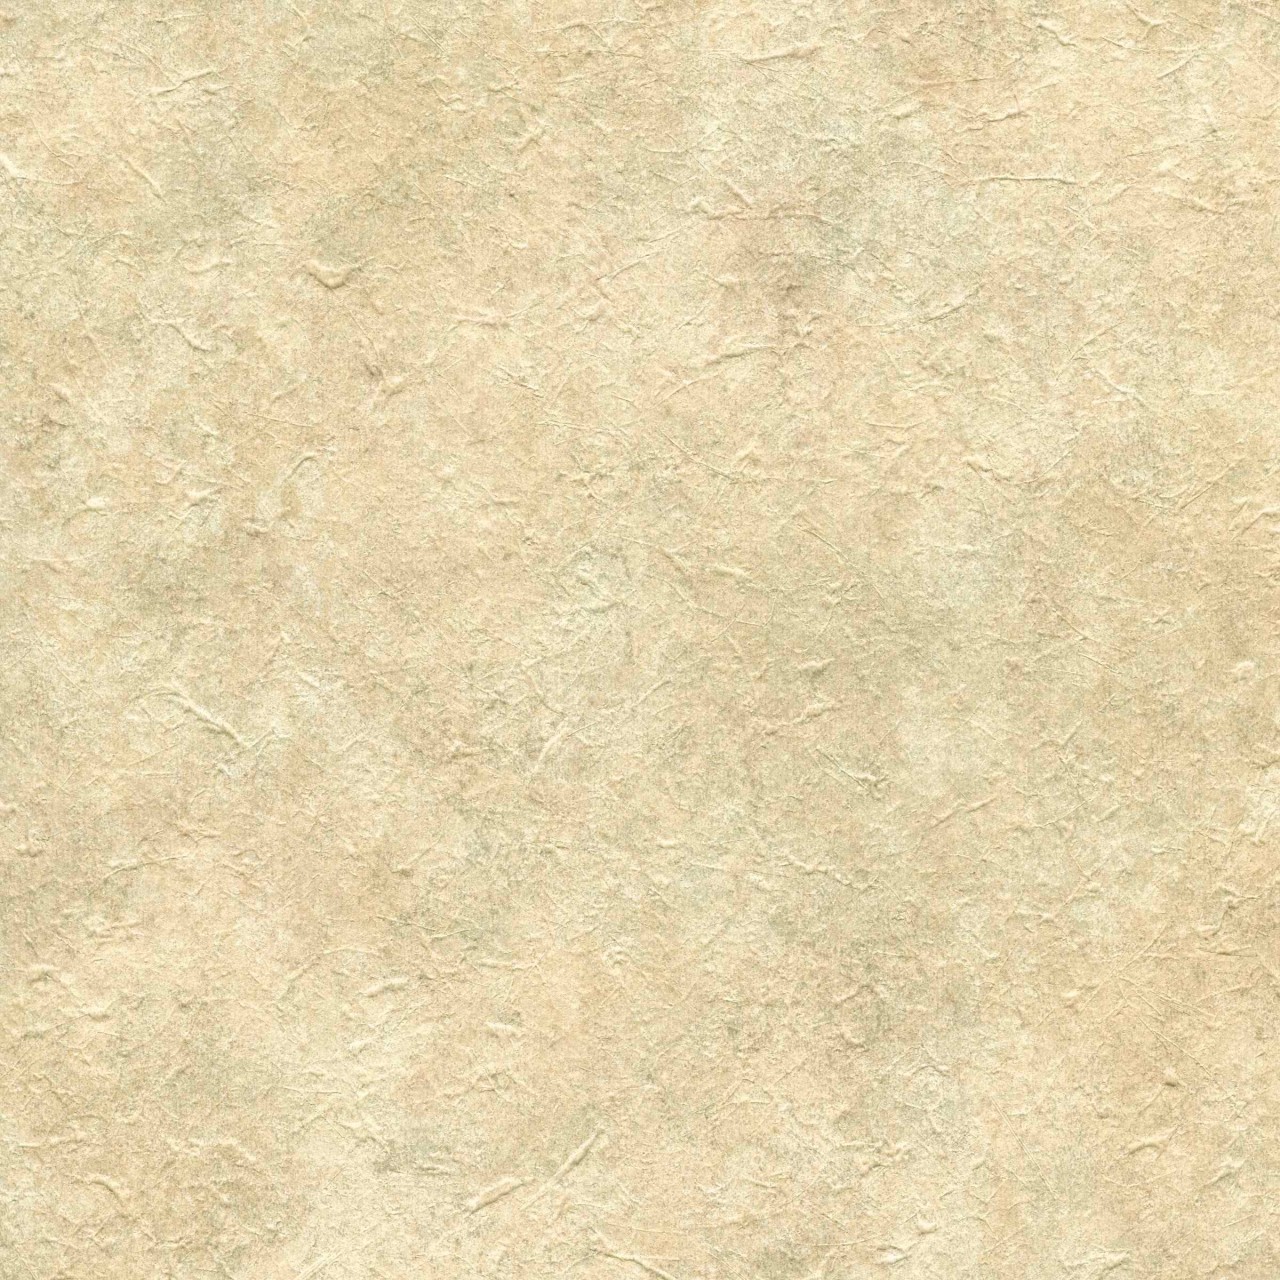 Tan 98W2210 Faux Stone Wallpaper   Textures Wallpaper 1280x1280